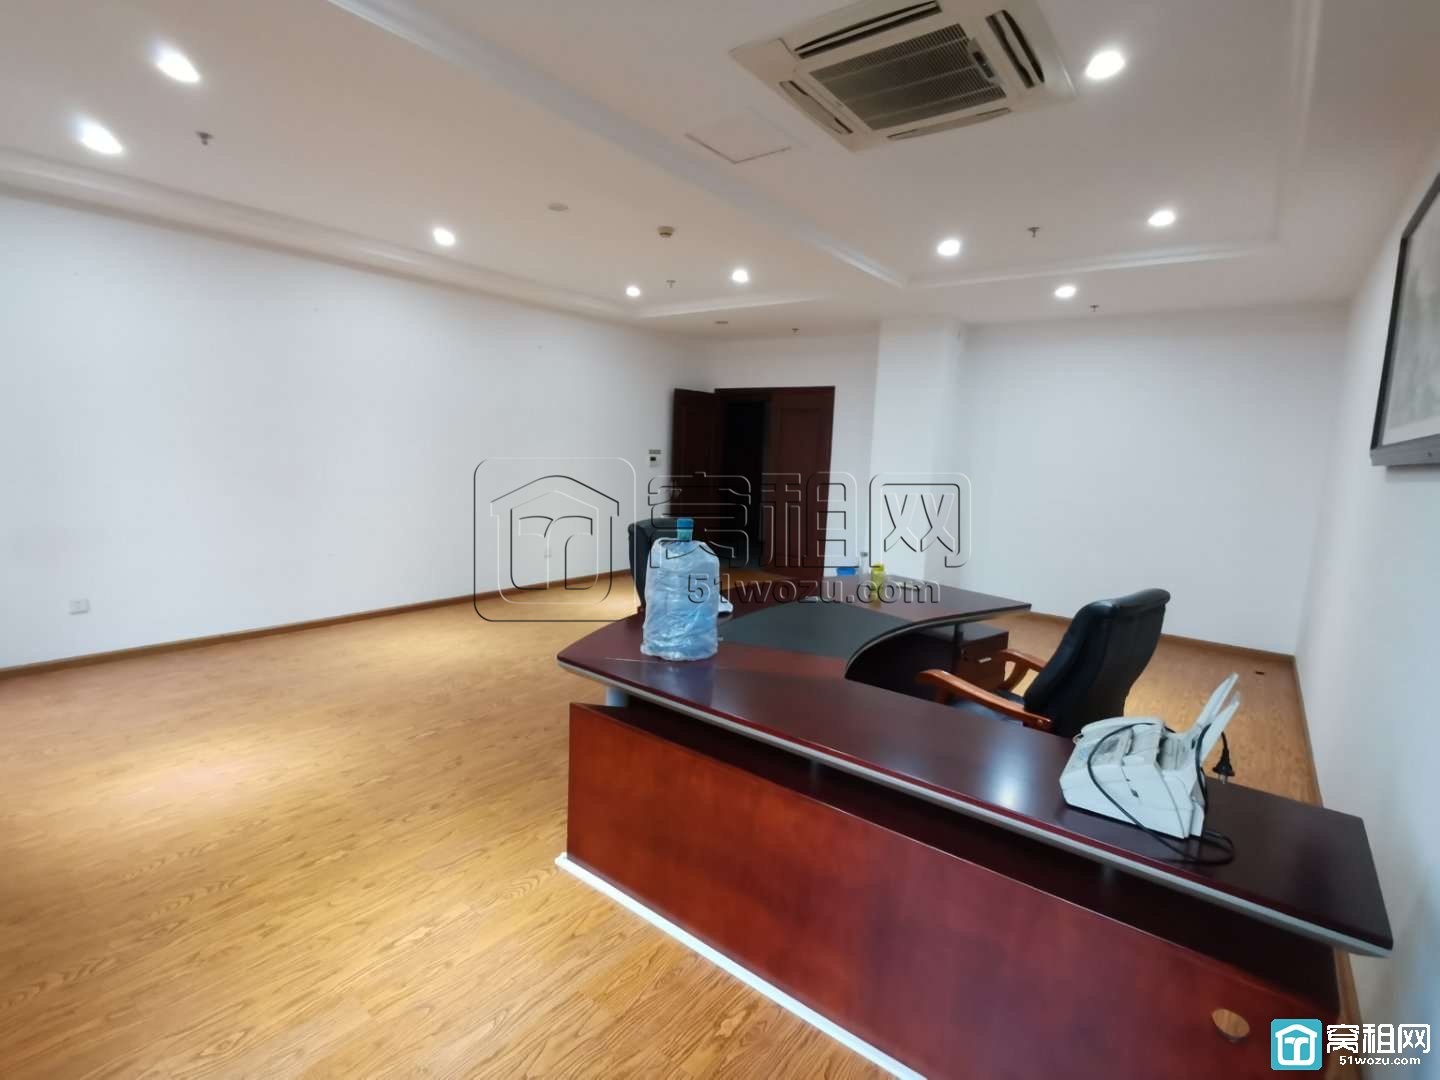 宁波高新区研发园区5楼一套面积55平米办公室出租(图6)